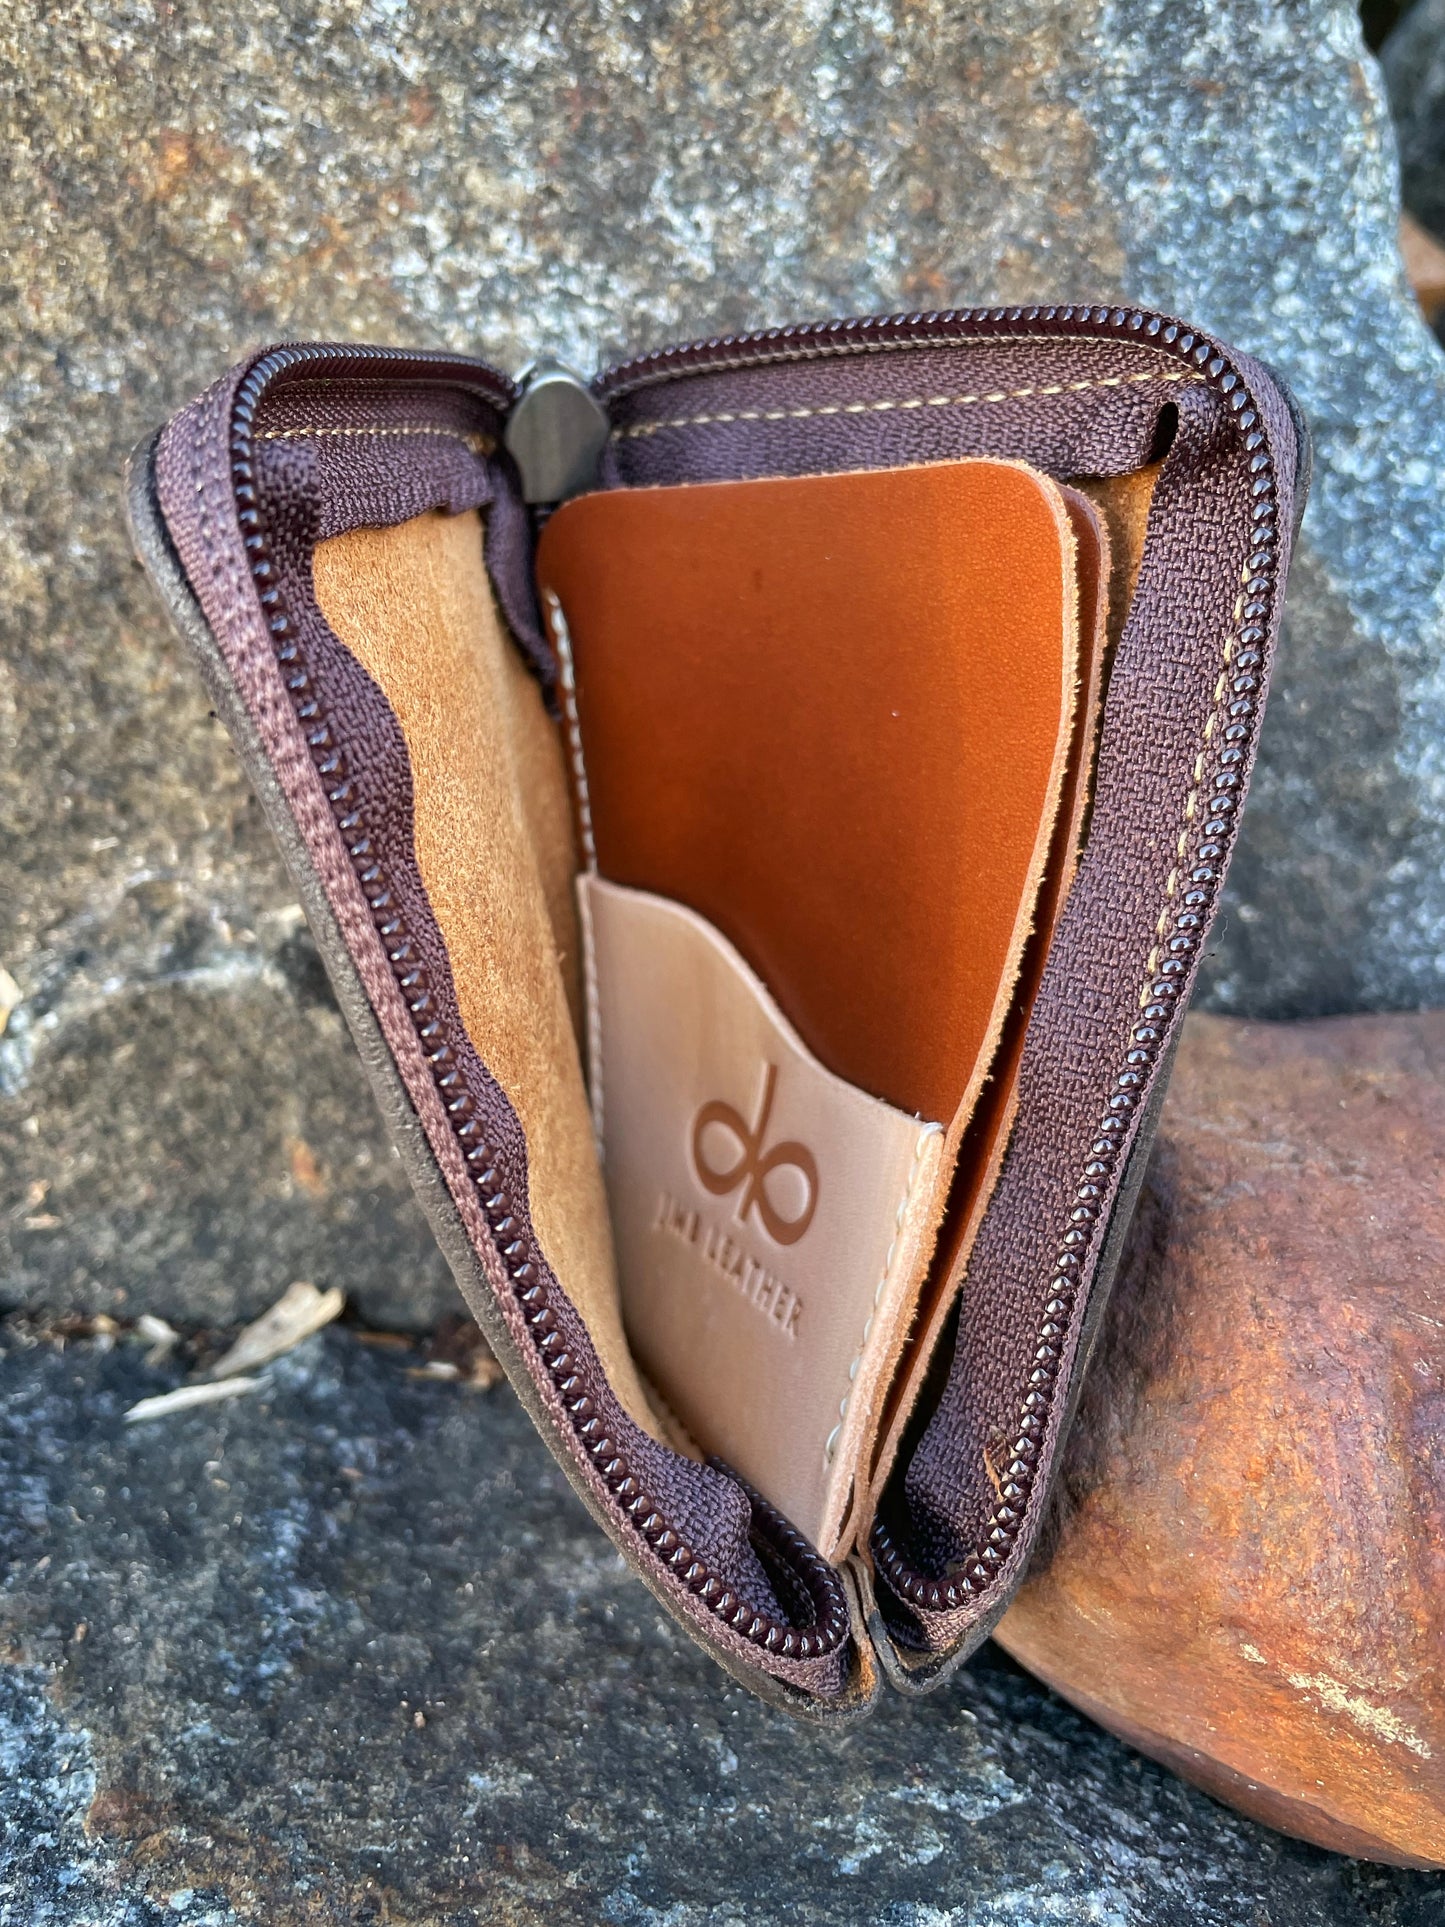 Compact ZIP wallet orange